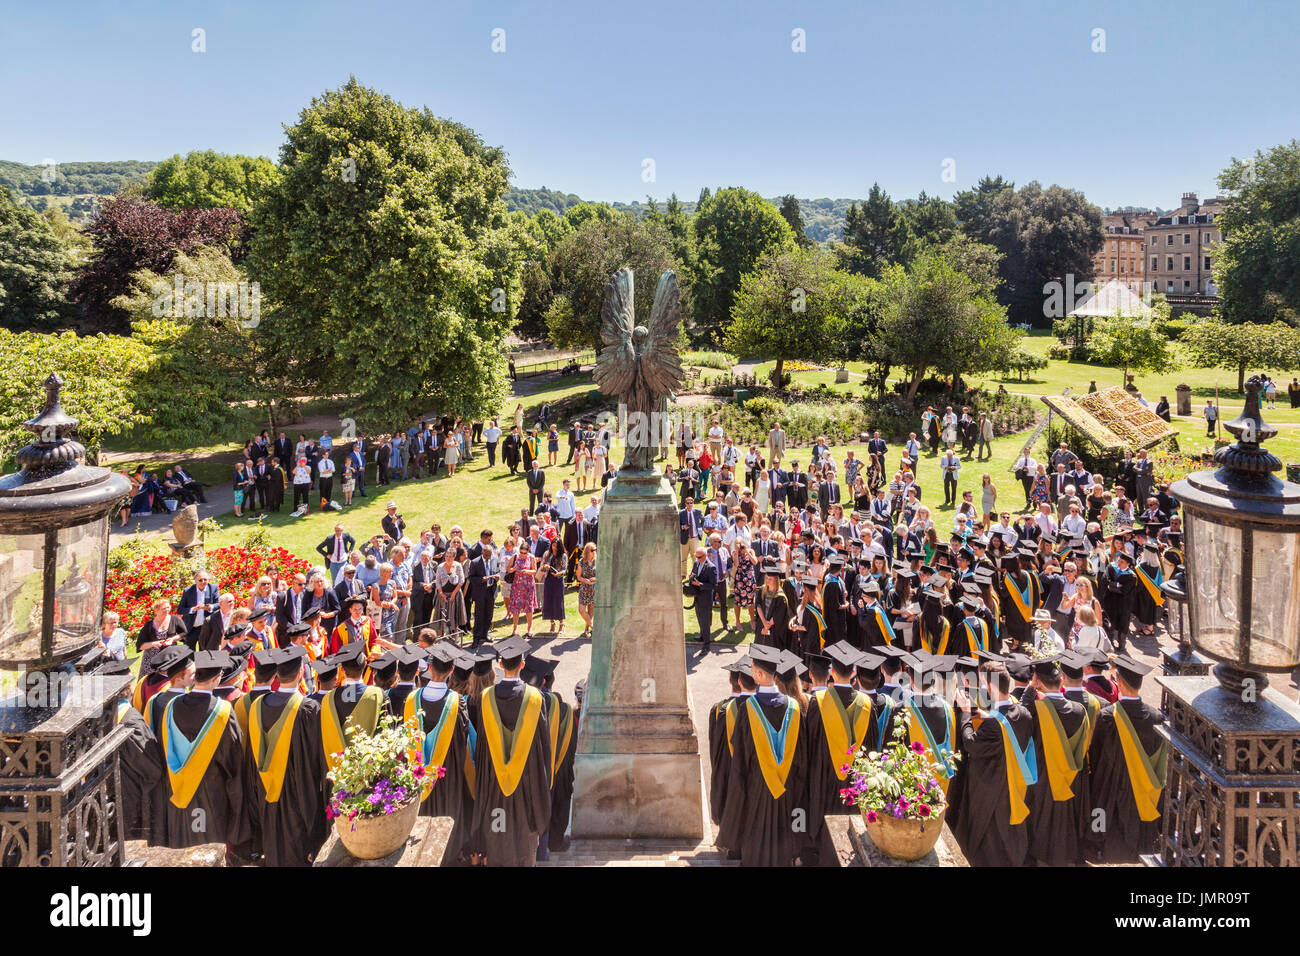 El 5 de julio de 2017: Bath, Somerset, Inglaterra, Reino Unido - El día de graduación de estudiantes de la Universidad de Bath, equipo fotos tomadas en Parade Gardens. Foto de stock